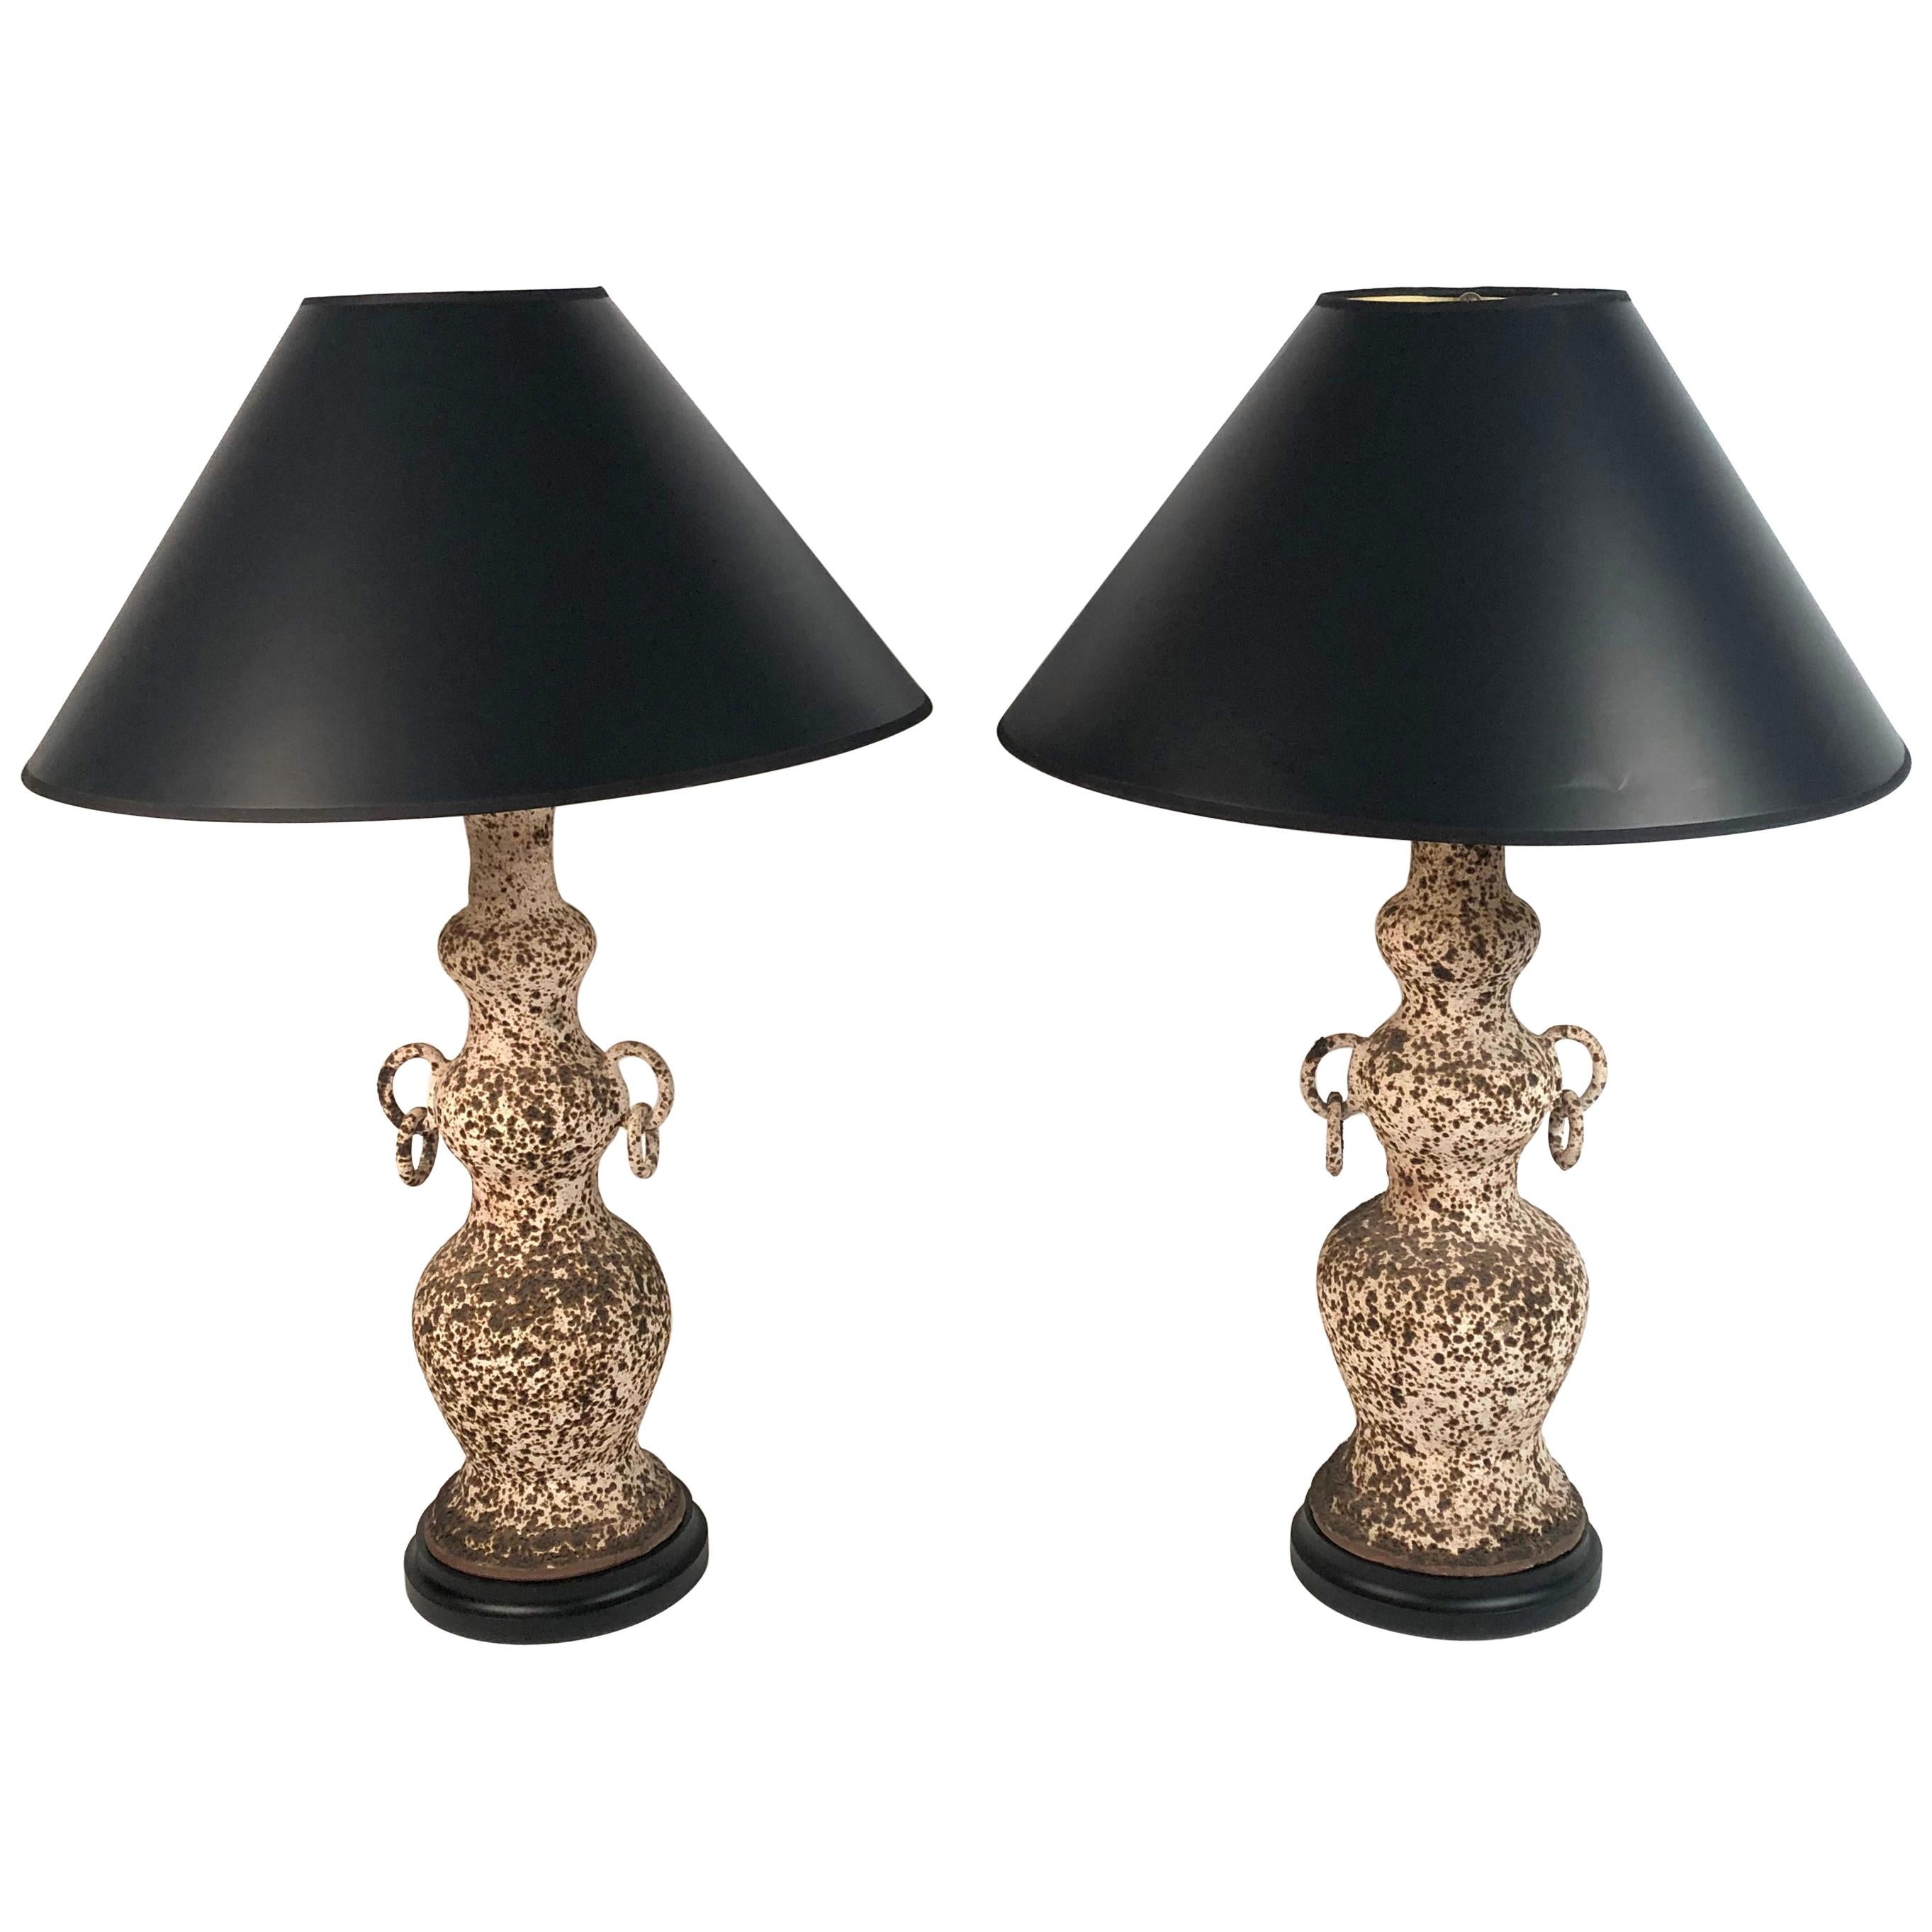 Pair of Italian Art Pottery Lamps